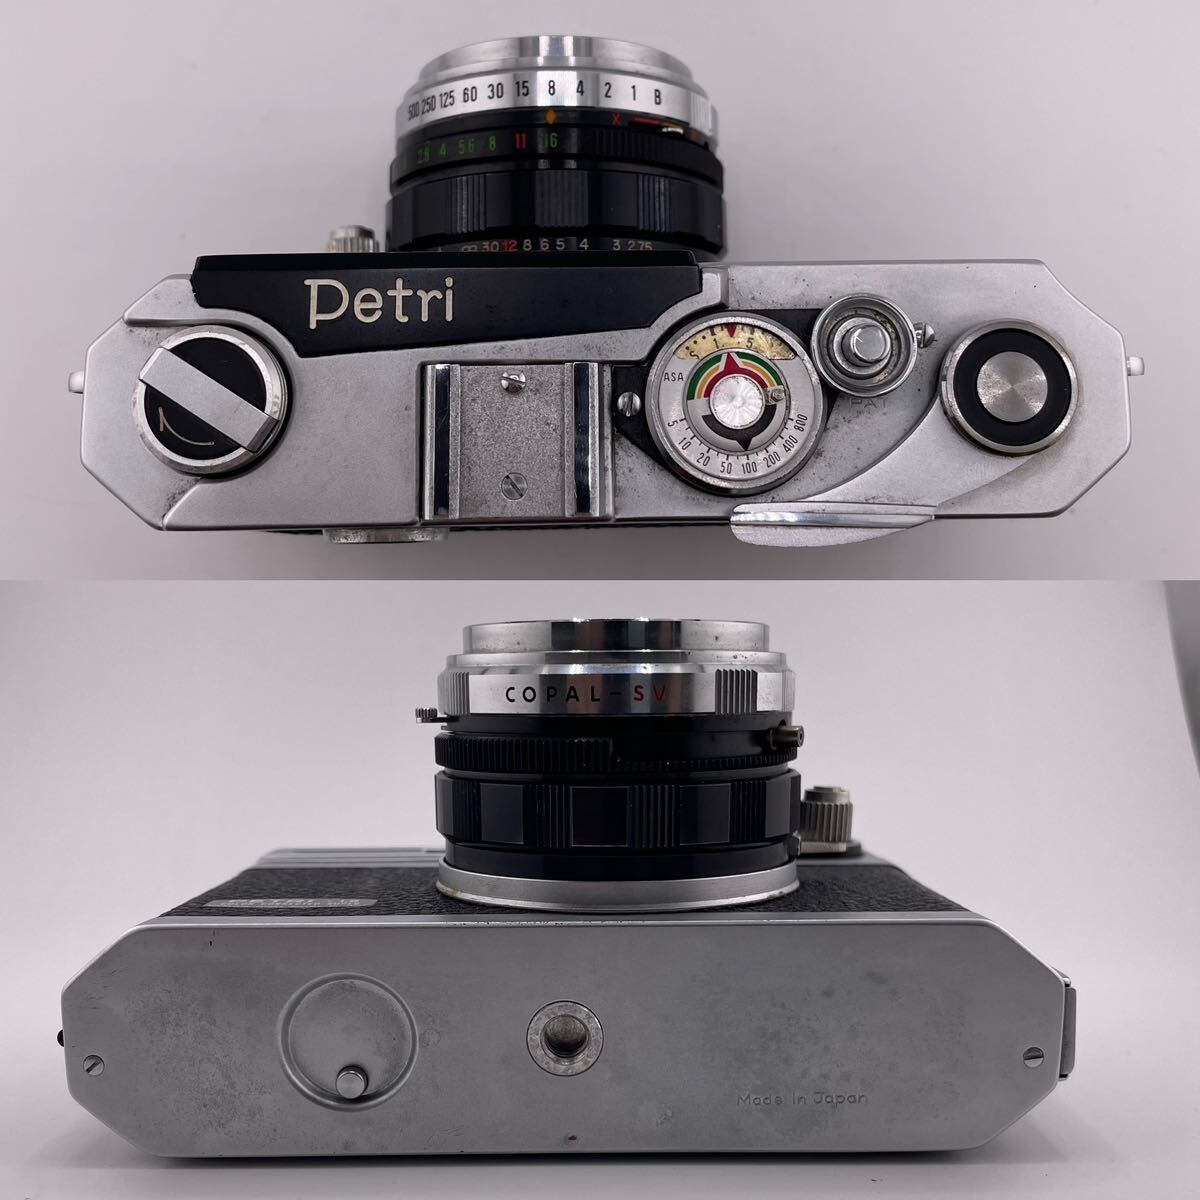 PETRI Detri フィルムカメラ カメラ Petri Orikkor 1:1.9 f=4.5cm レンズ カメラレンズ レトロ カバー付き【S30345-612】の画像5